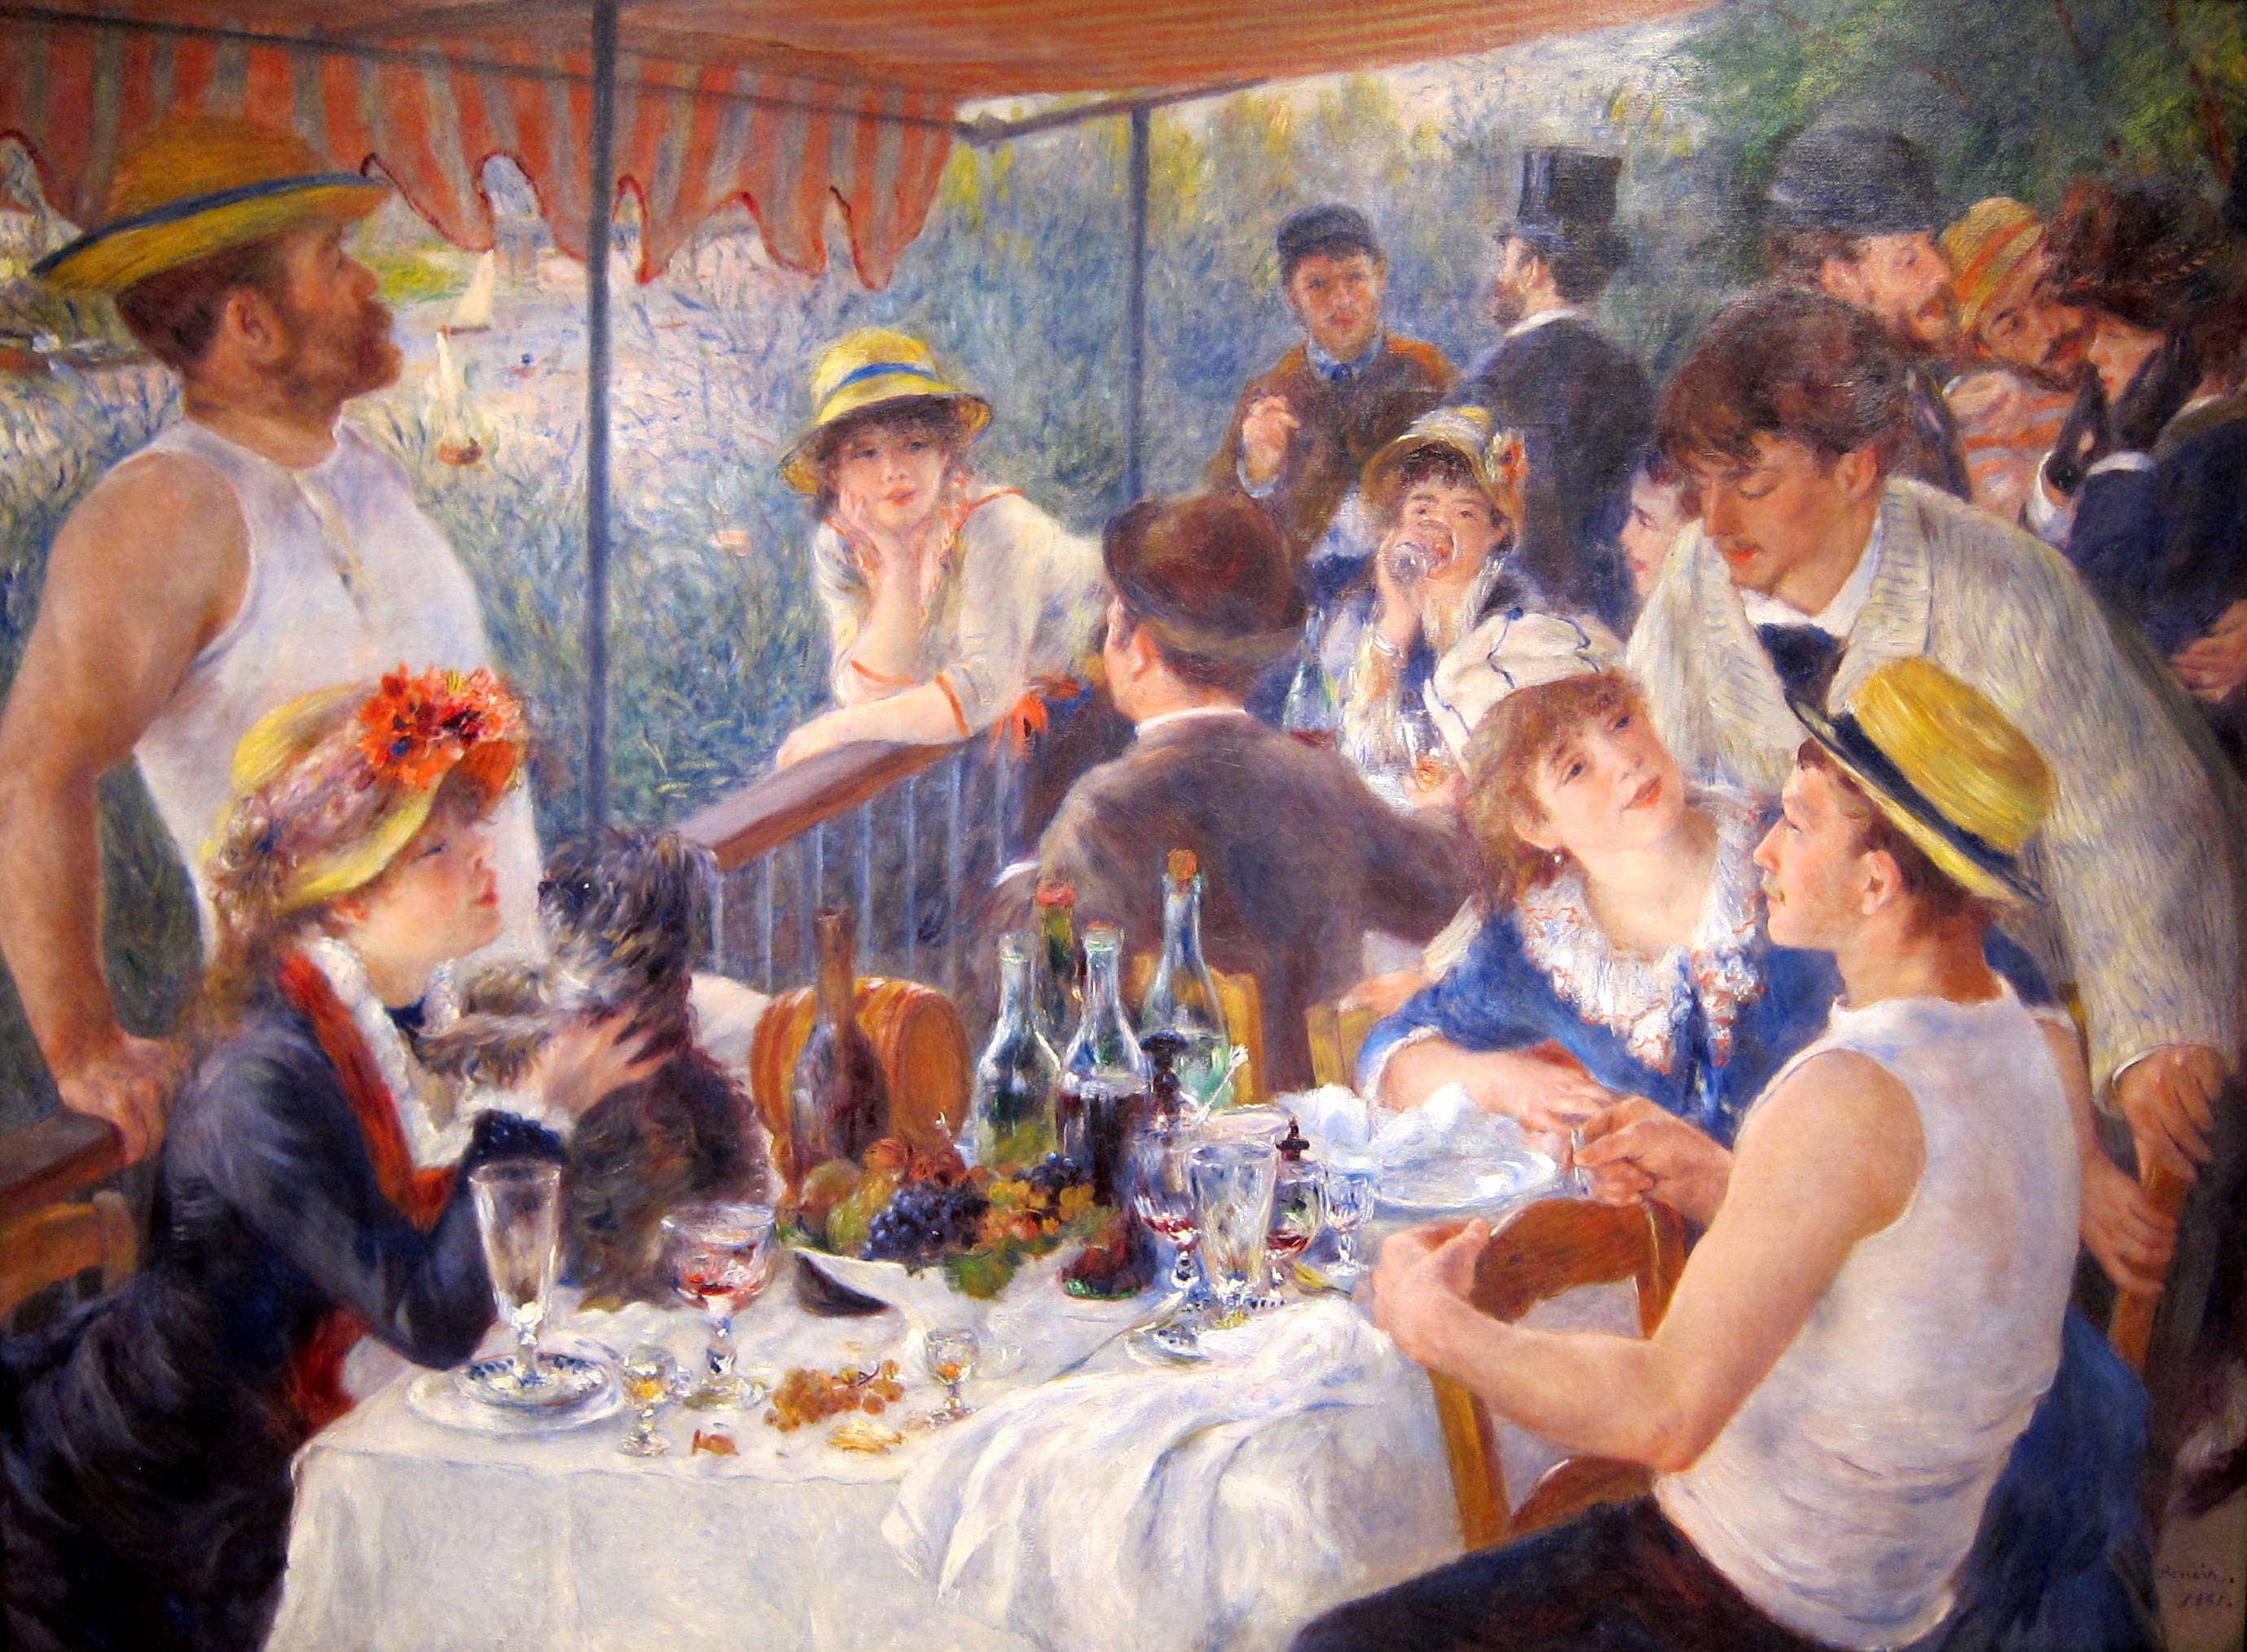 La colazione dei canottieri by Pierre-Auguste Renoir - 1880 - 129.9 × 172.7 cm 